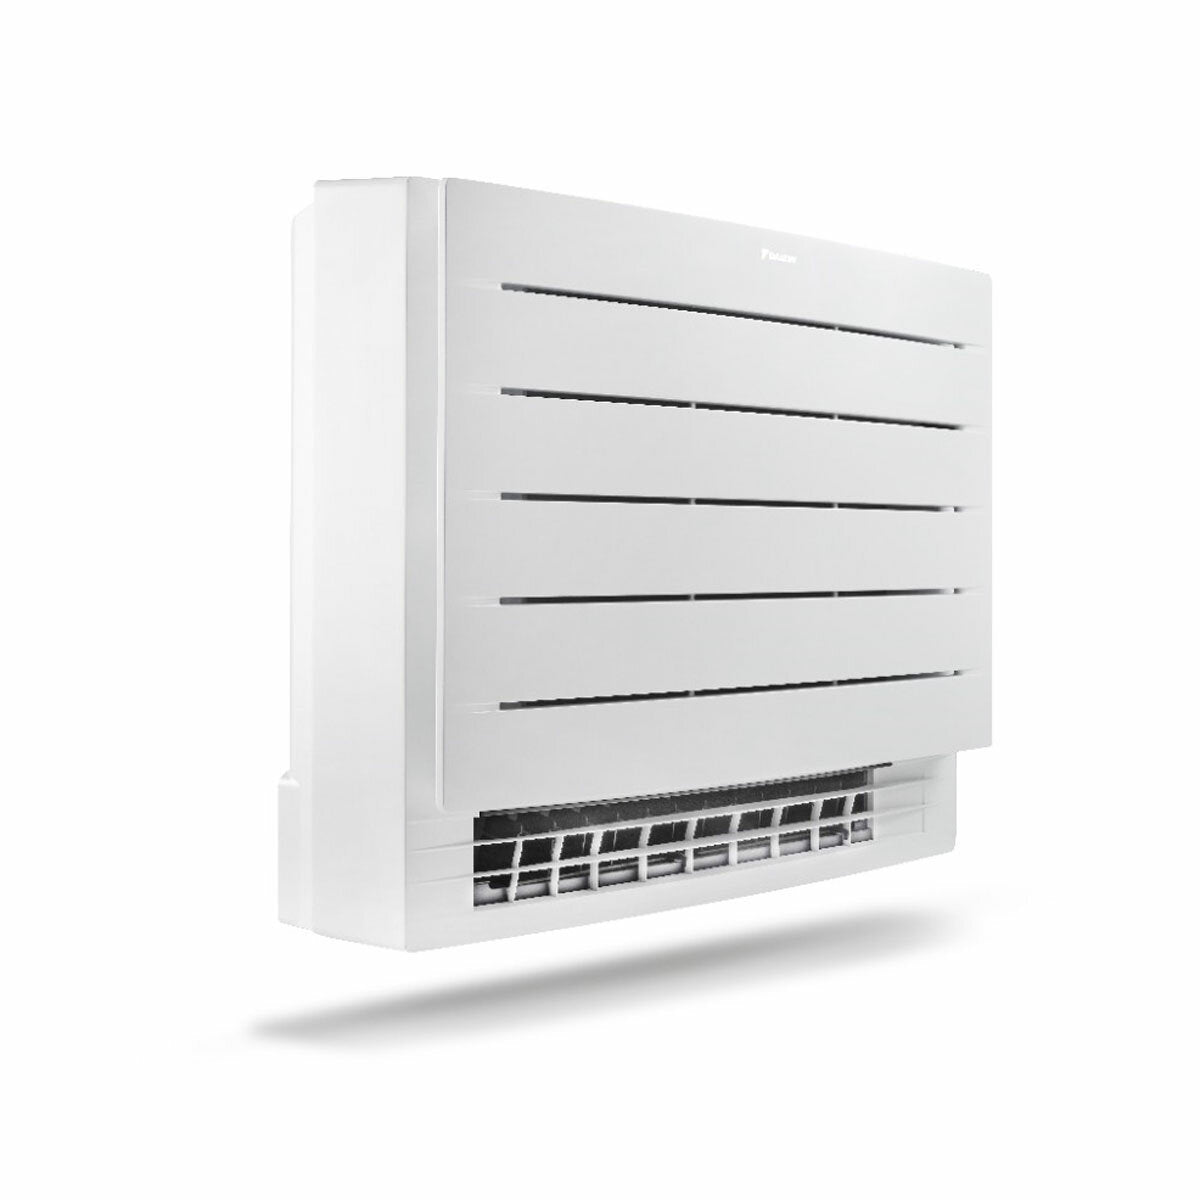 Daikin floor air conditioner Perfera Floor 12000 BTU inverter A ++ with wifi